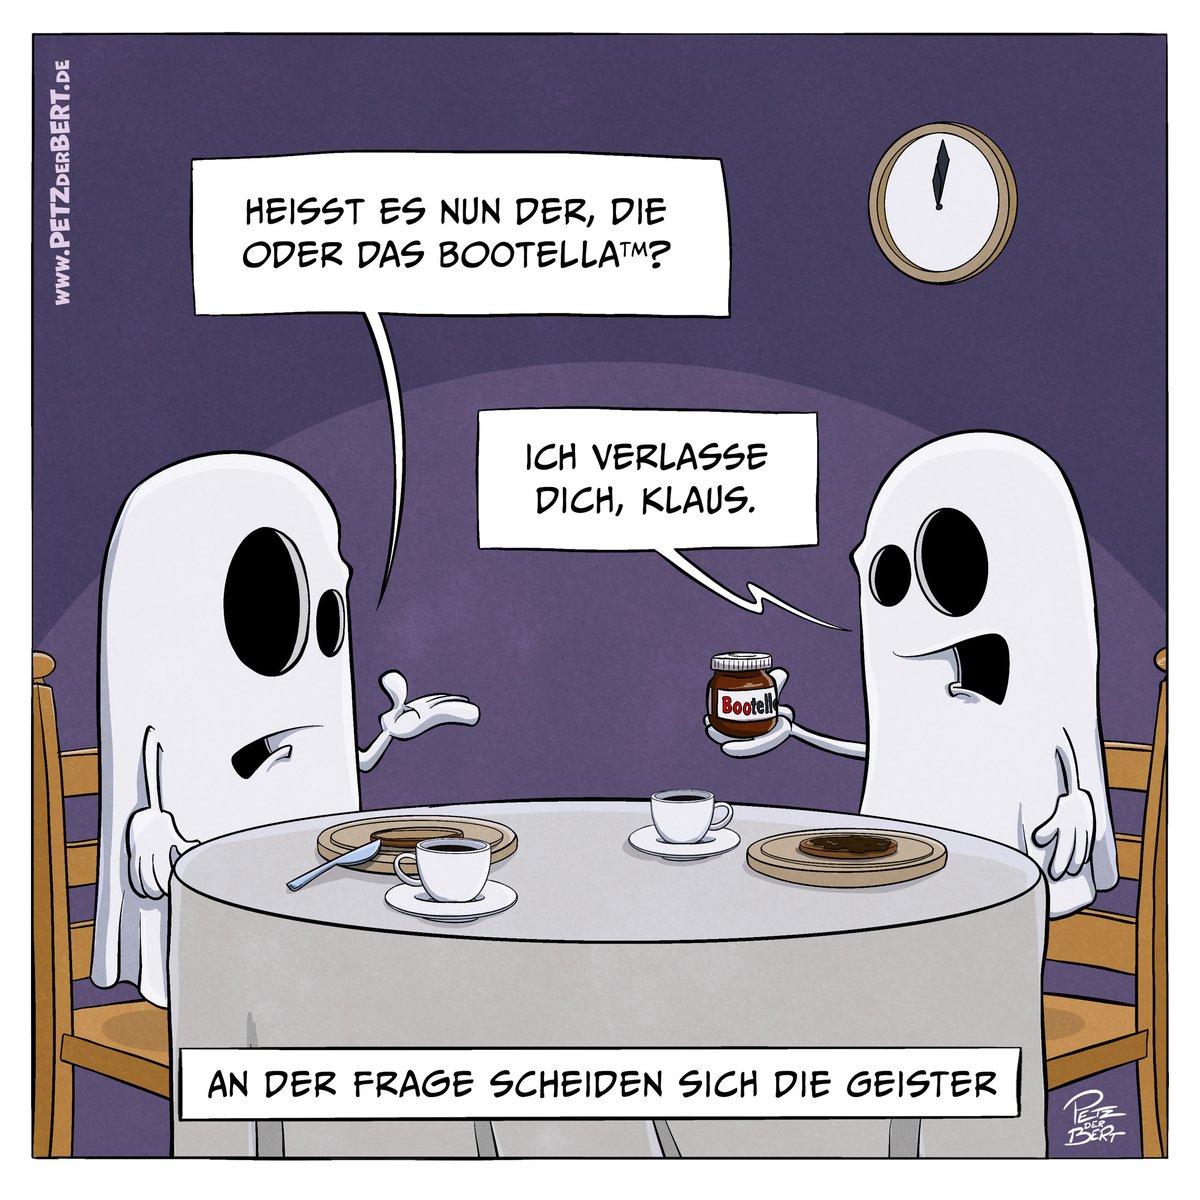 Geistreiche Frage zu #Halloween 
#cartoon #ghosting #nutella #kleinekunstklasse